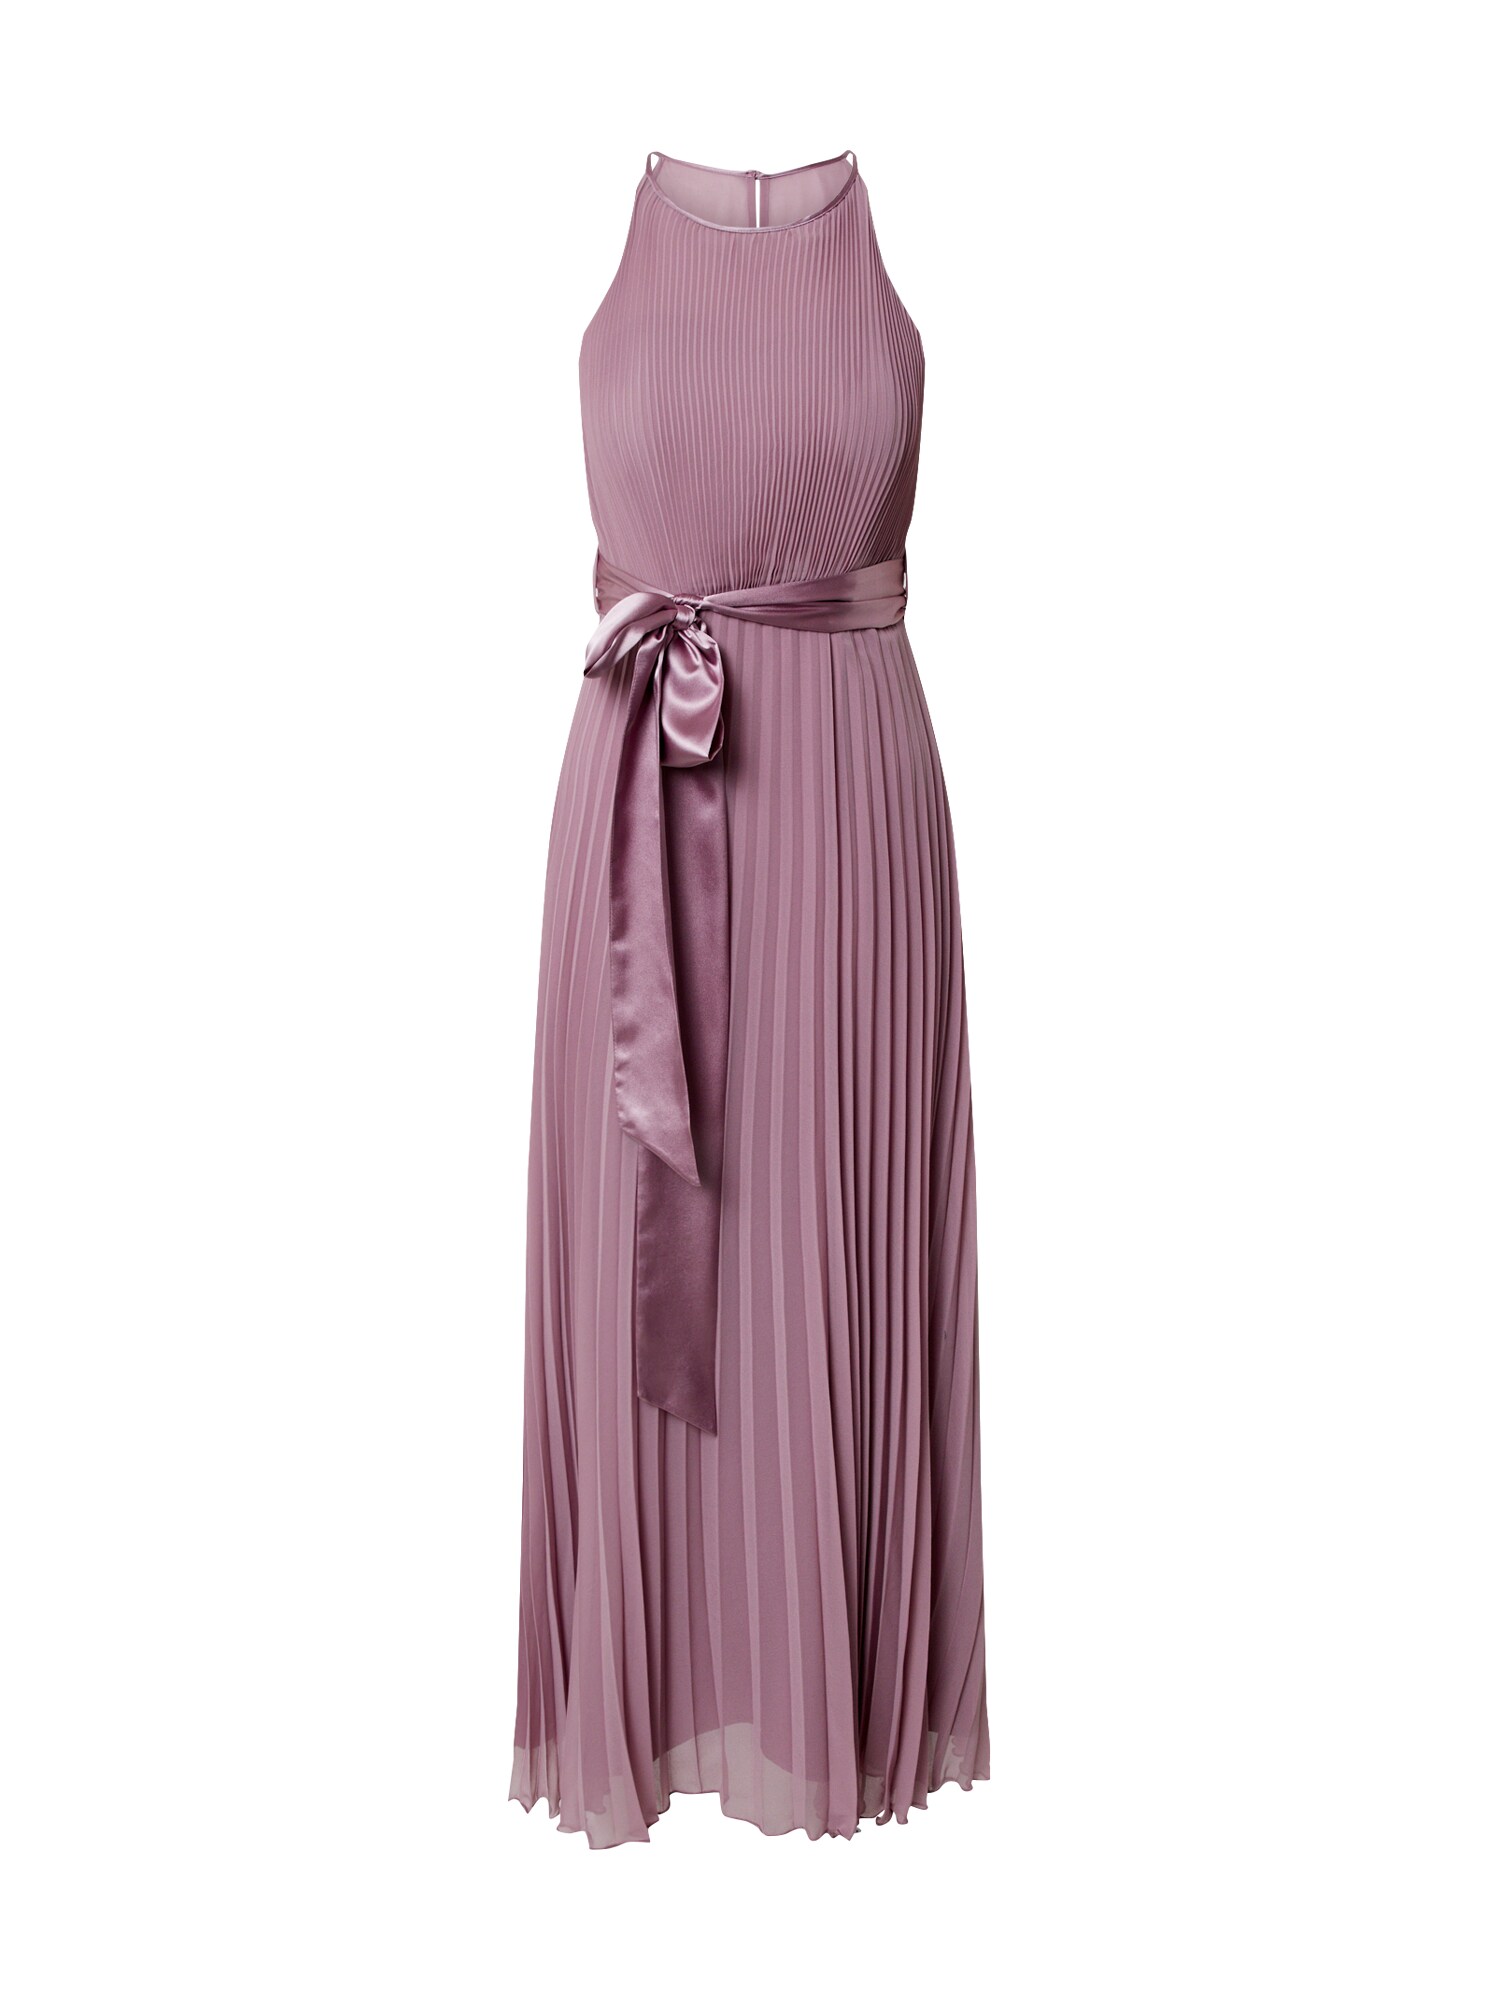 Dorothy Perkins Suknelė  ryškiai rožinė spalva